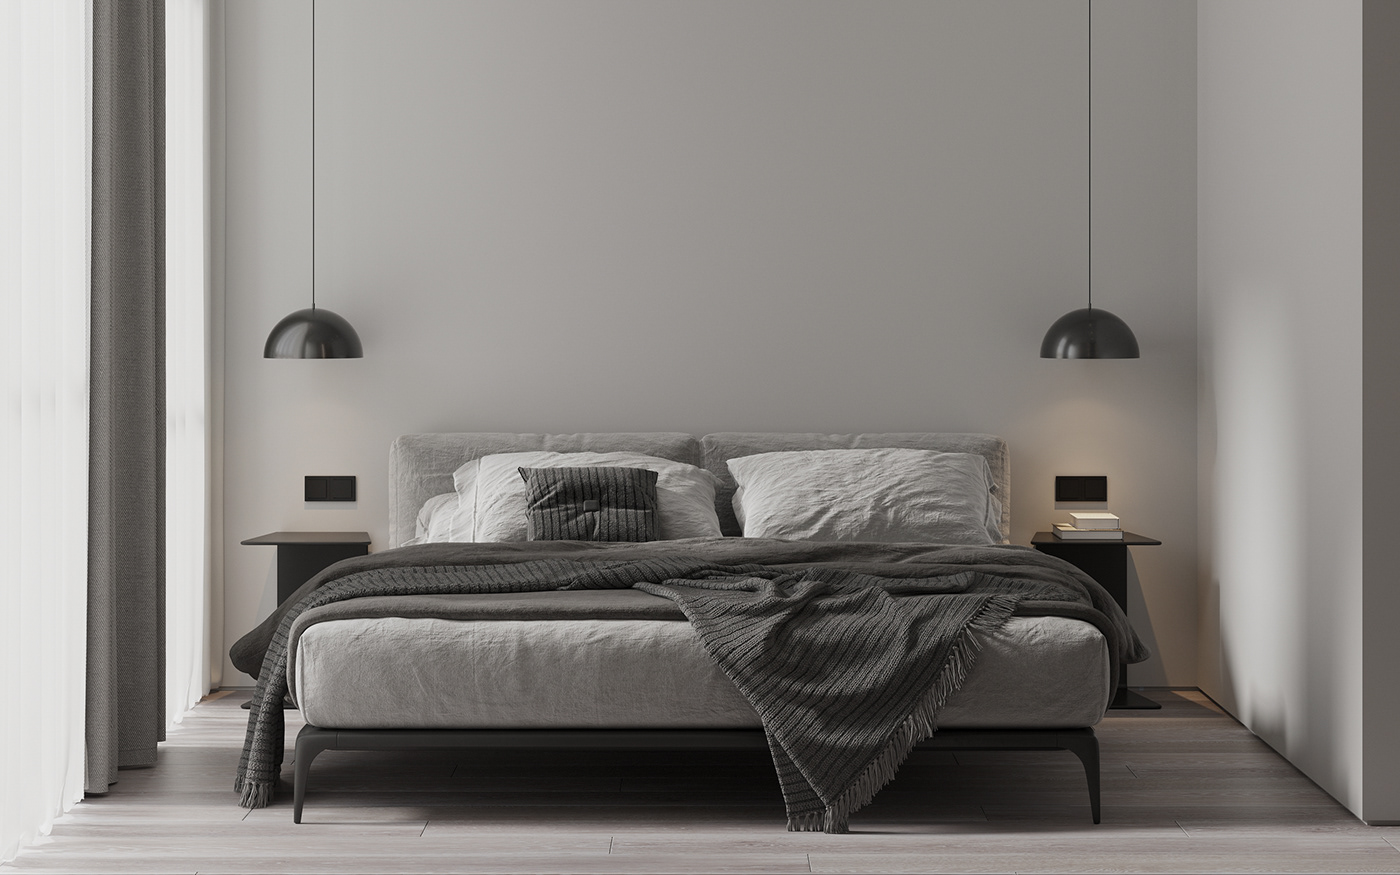 3ds max architecture corona render  interior design  Minimalism modern Render visualization дизайн дома дизайн интерьера